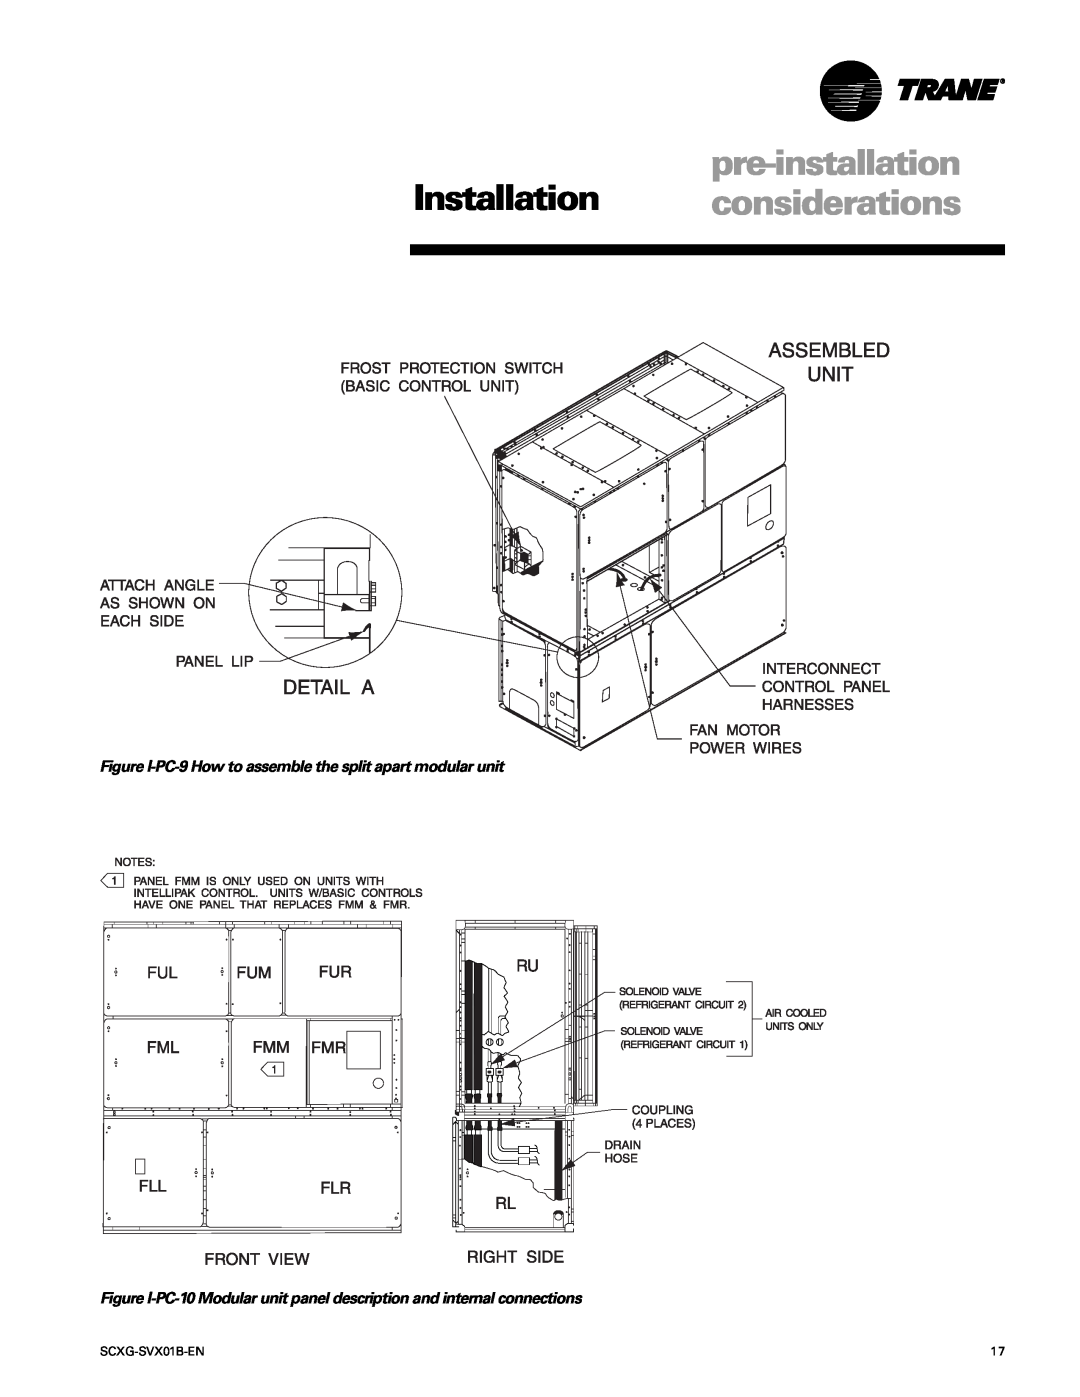 Trane SCXG-SVX01B-EN manual pre-installation Installation considerations 